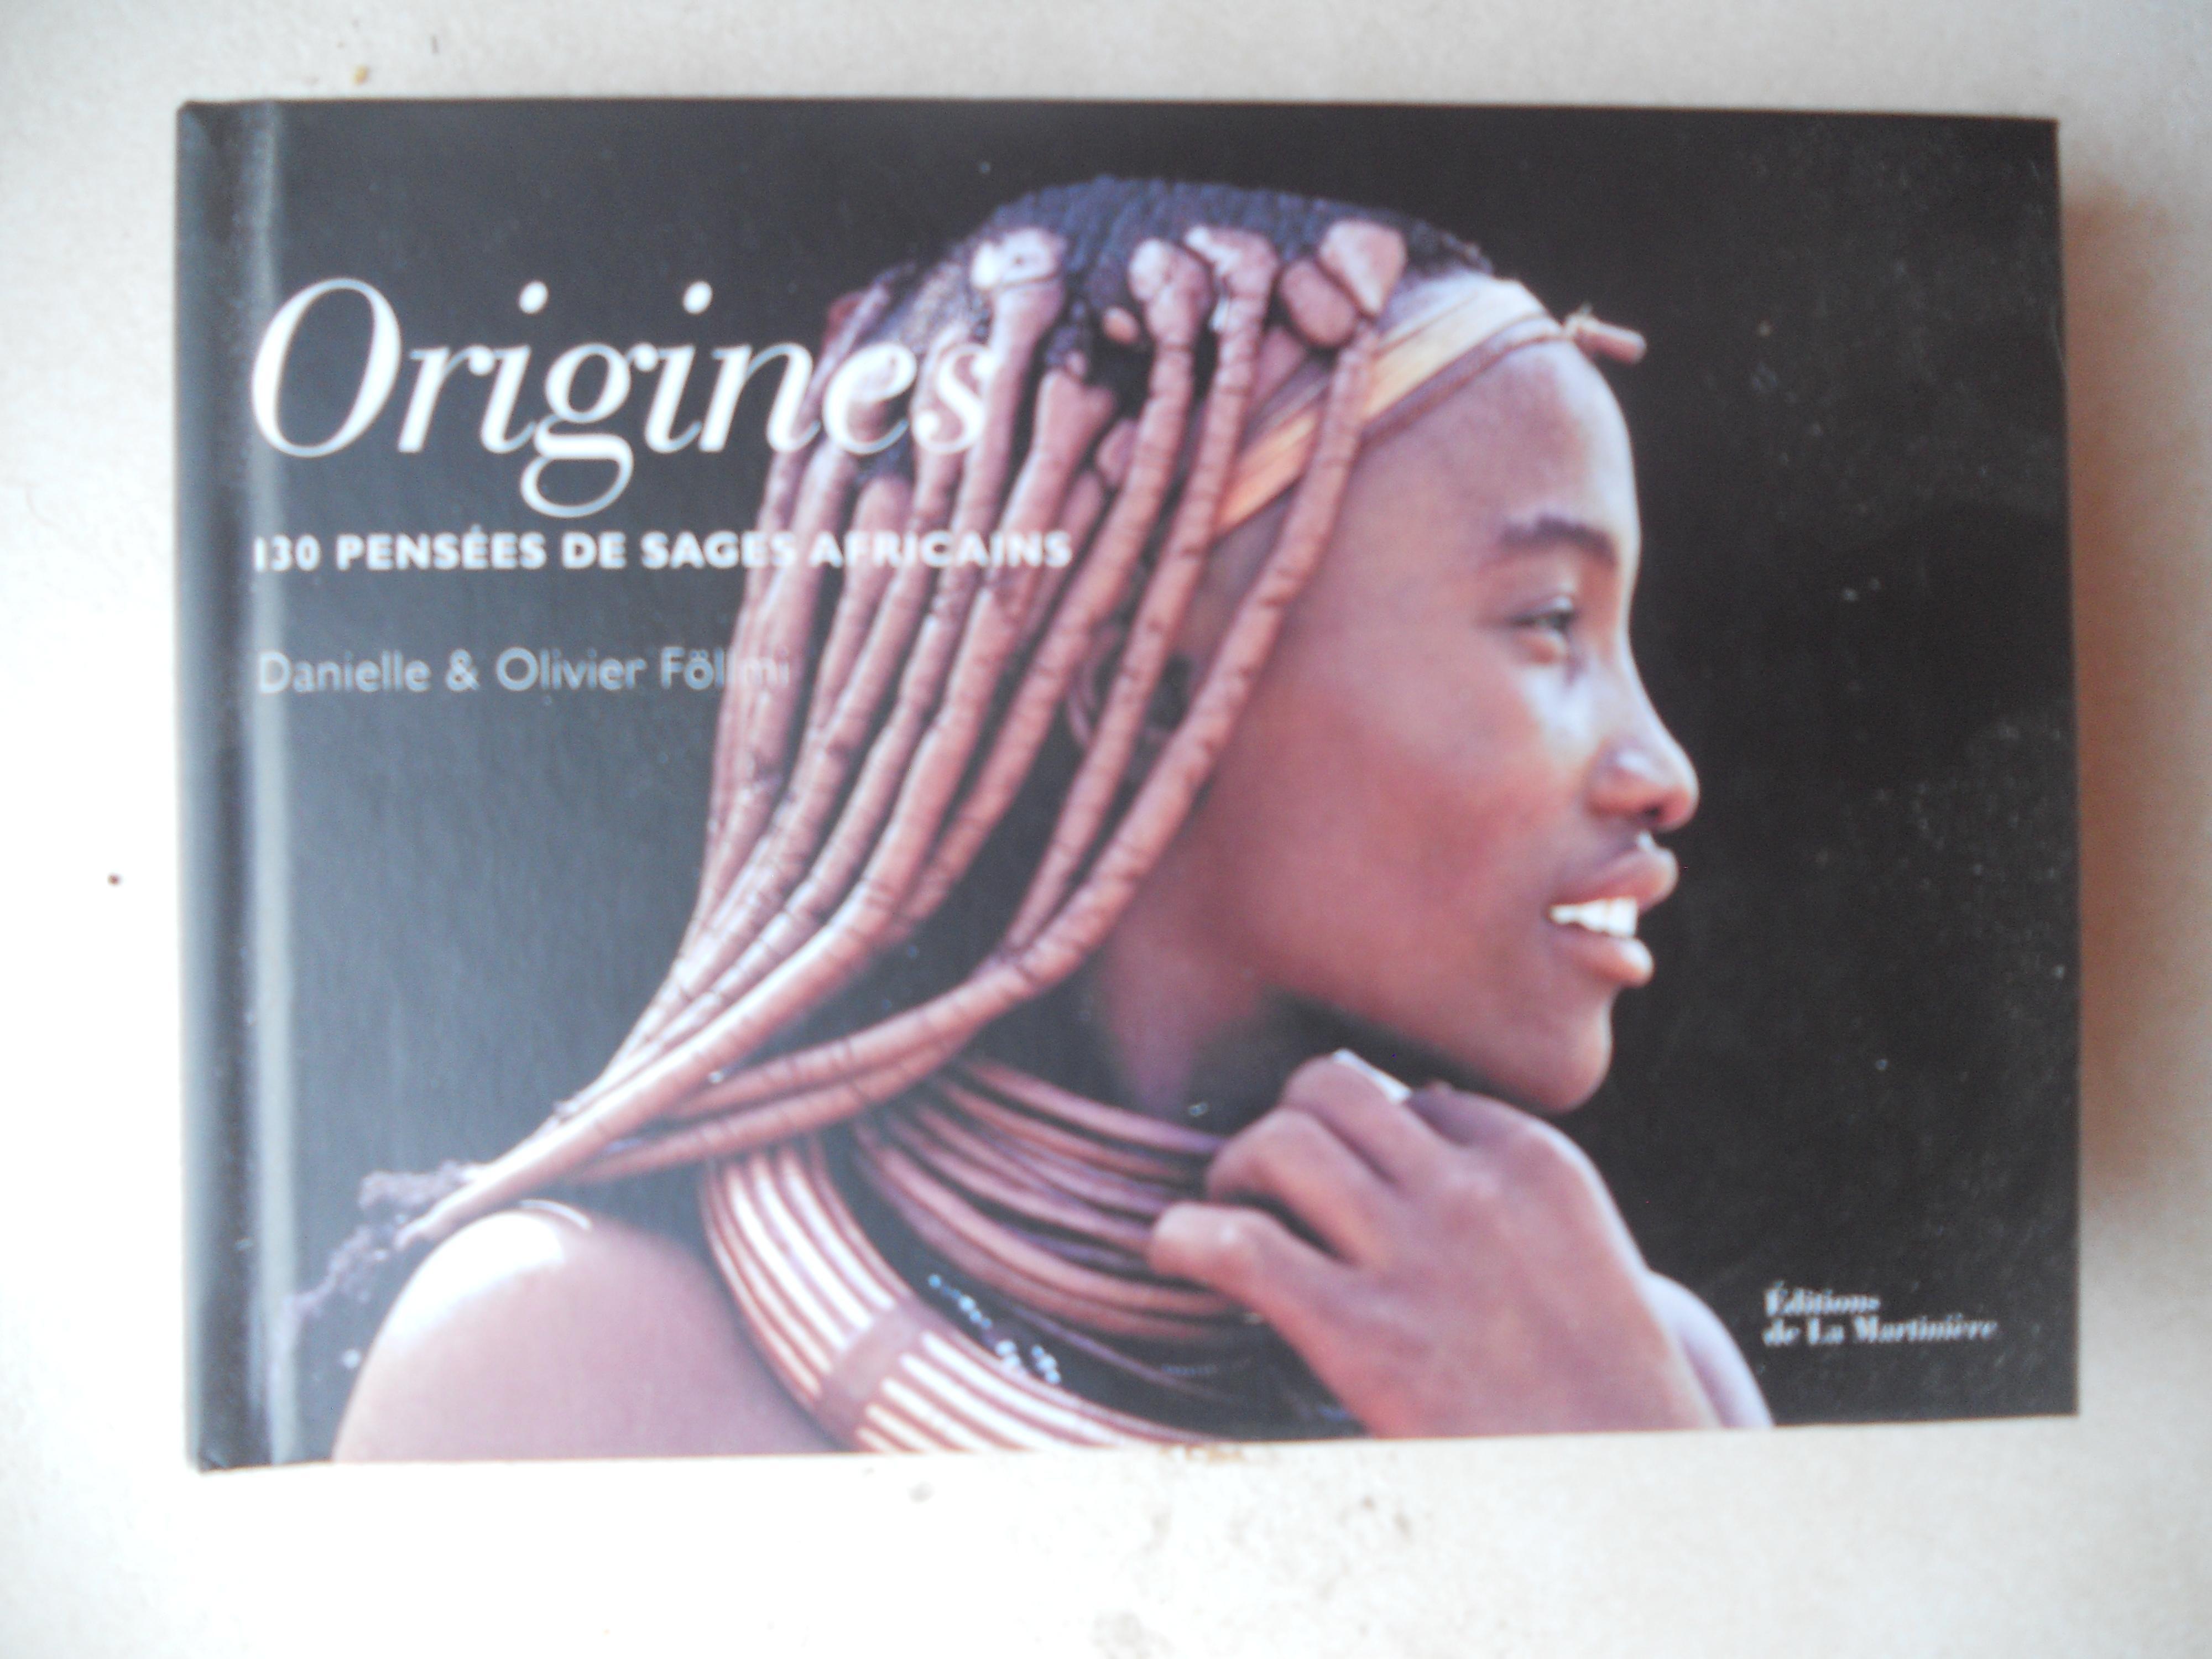 troc de troc album de proverbes africains avec très belles images image 0